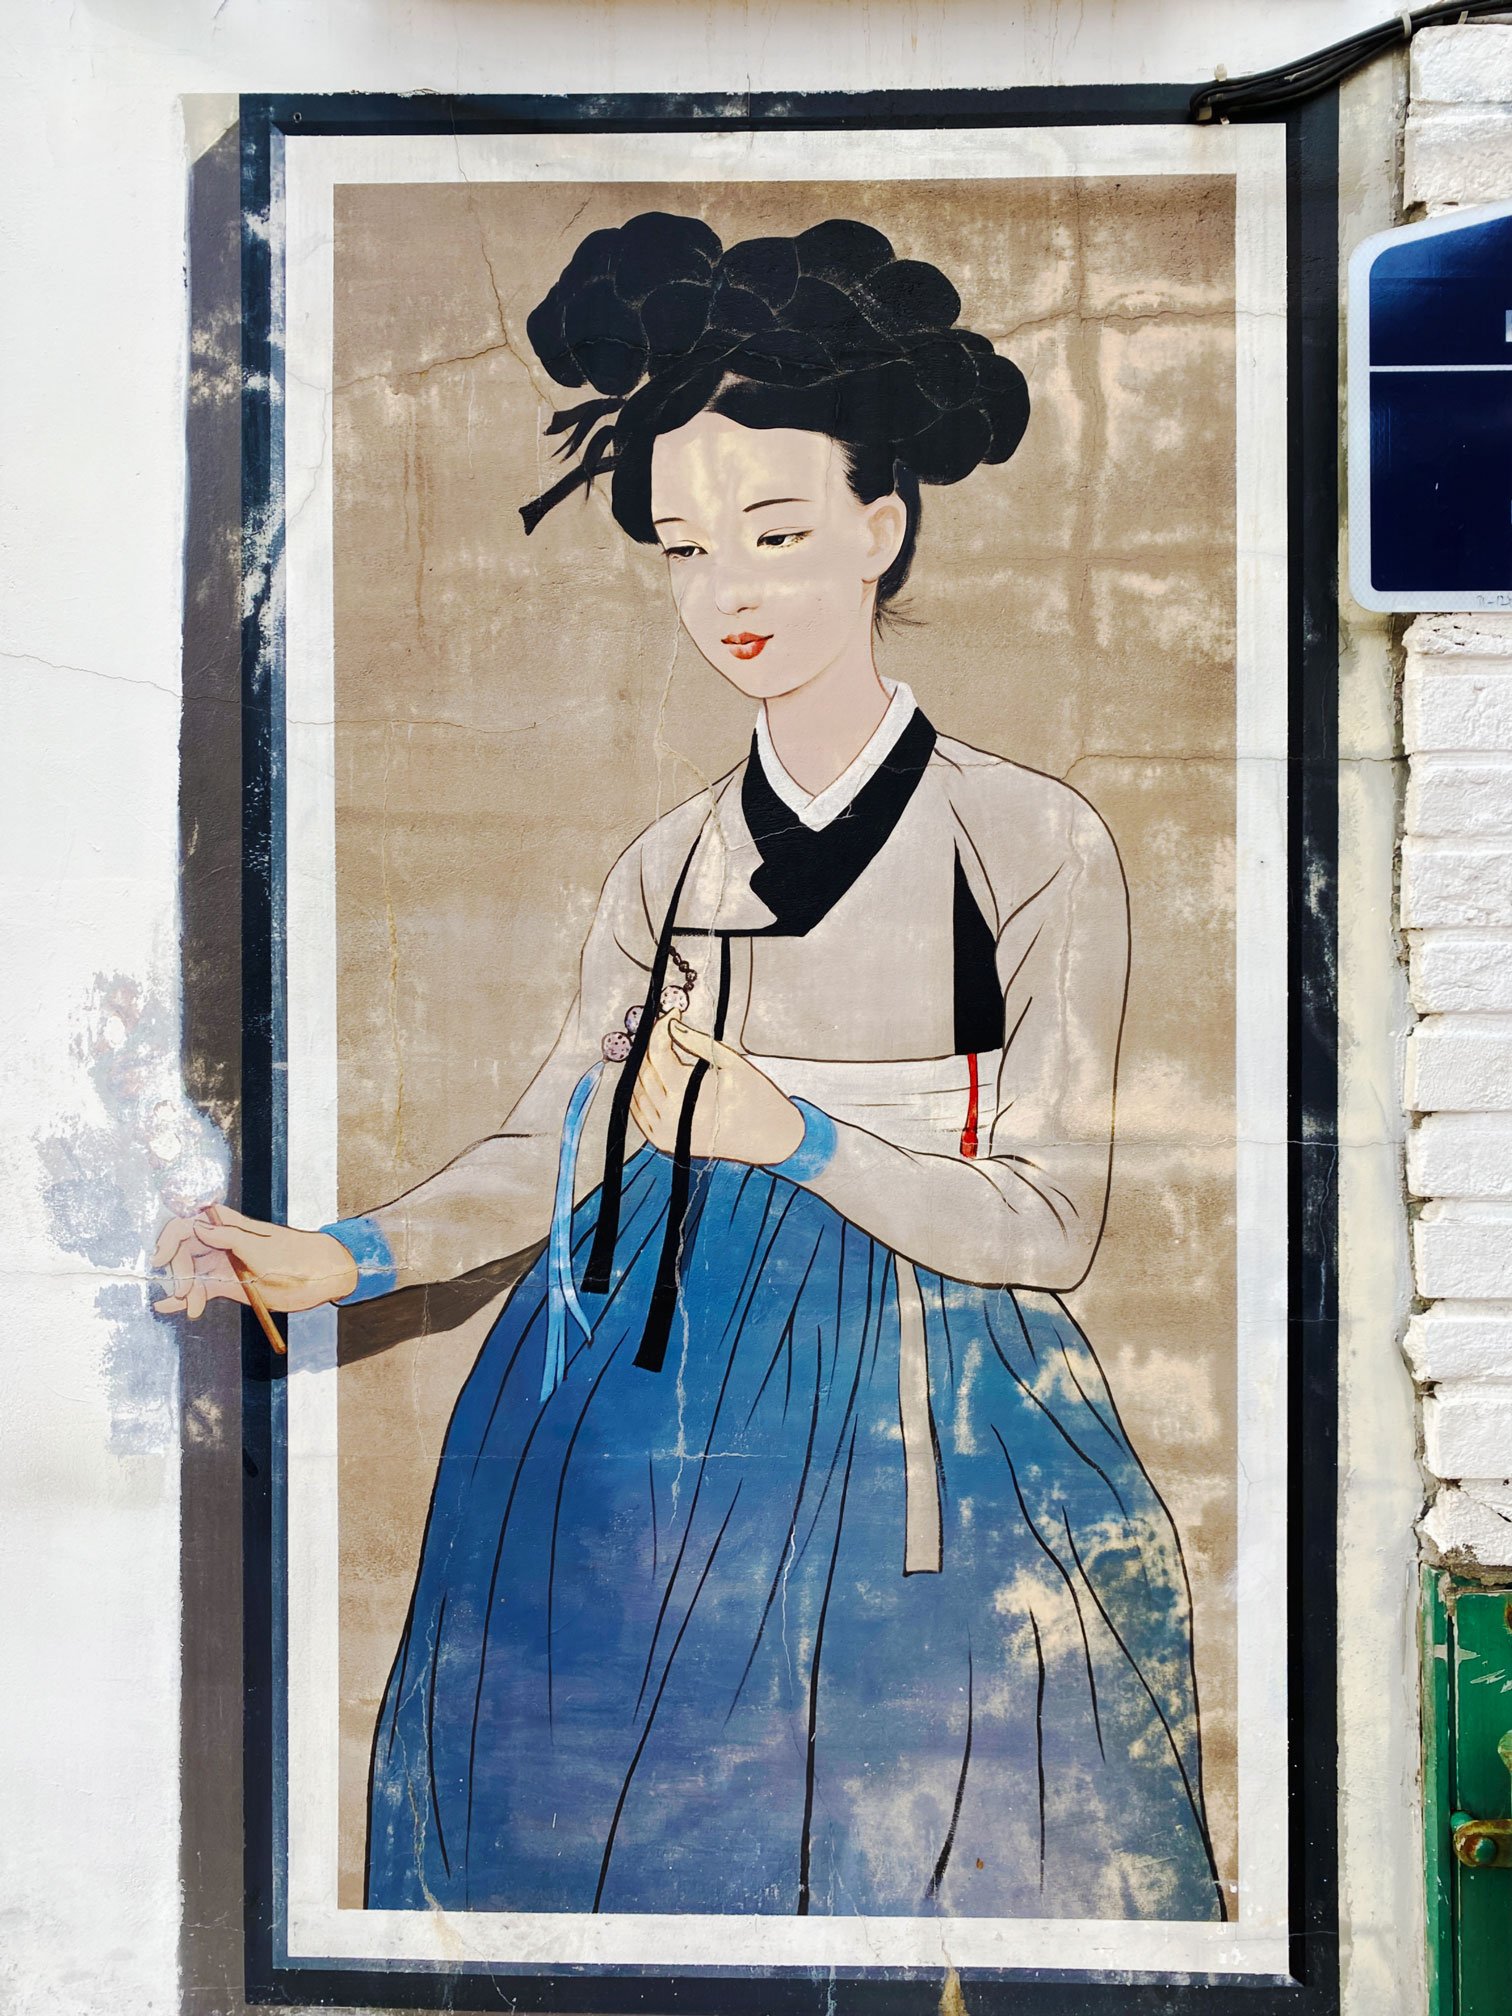 mural0-hanok-village-insadong.jpg